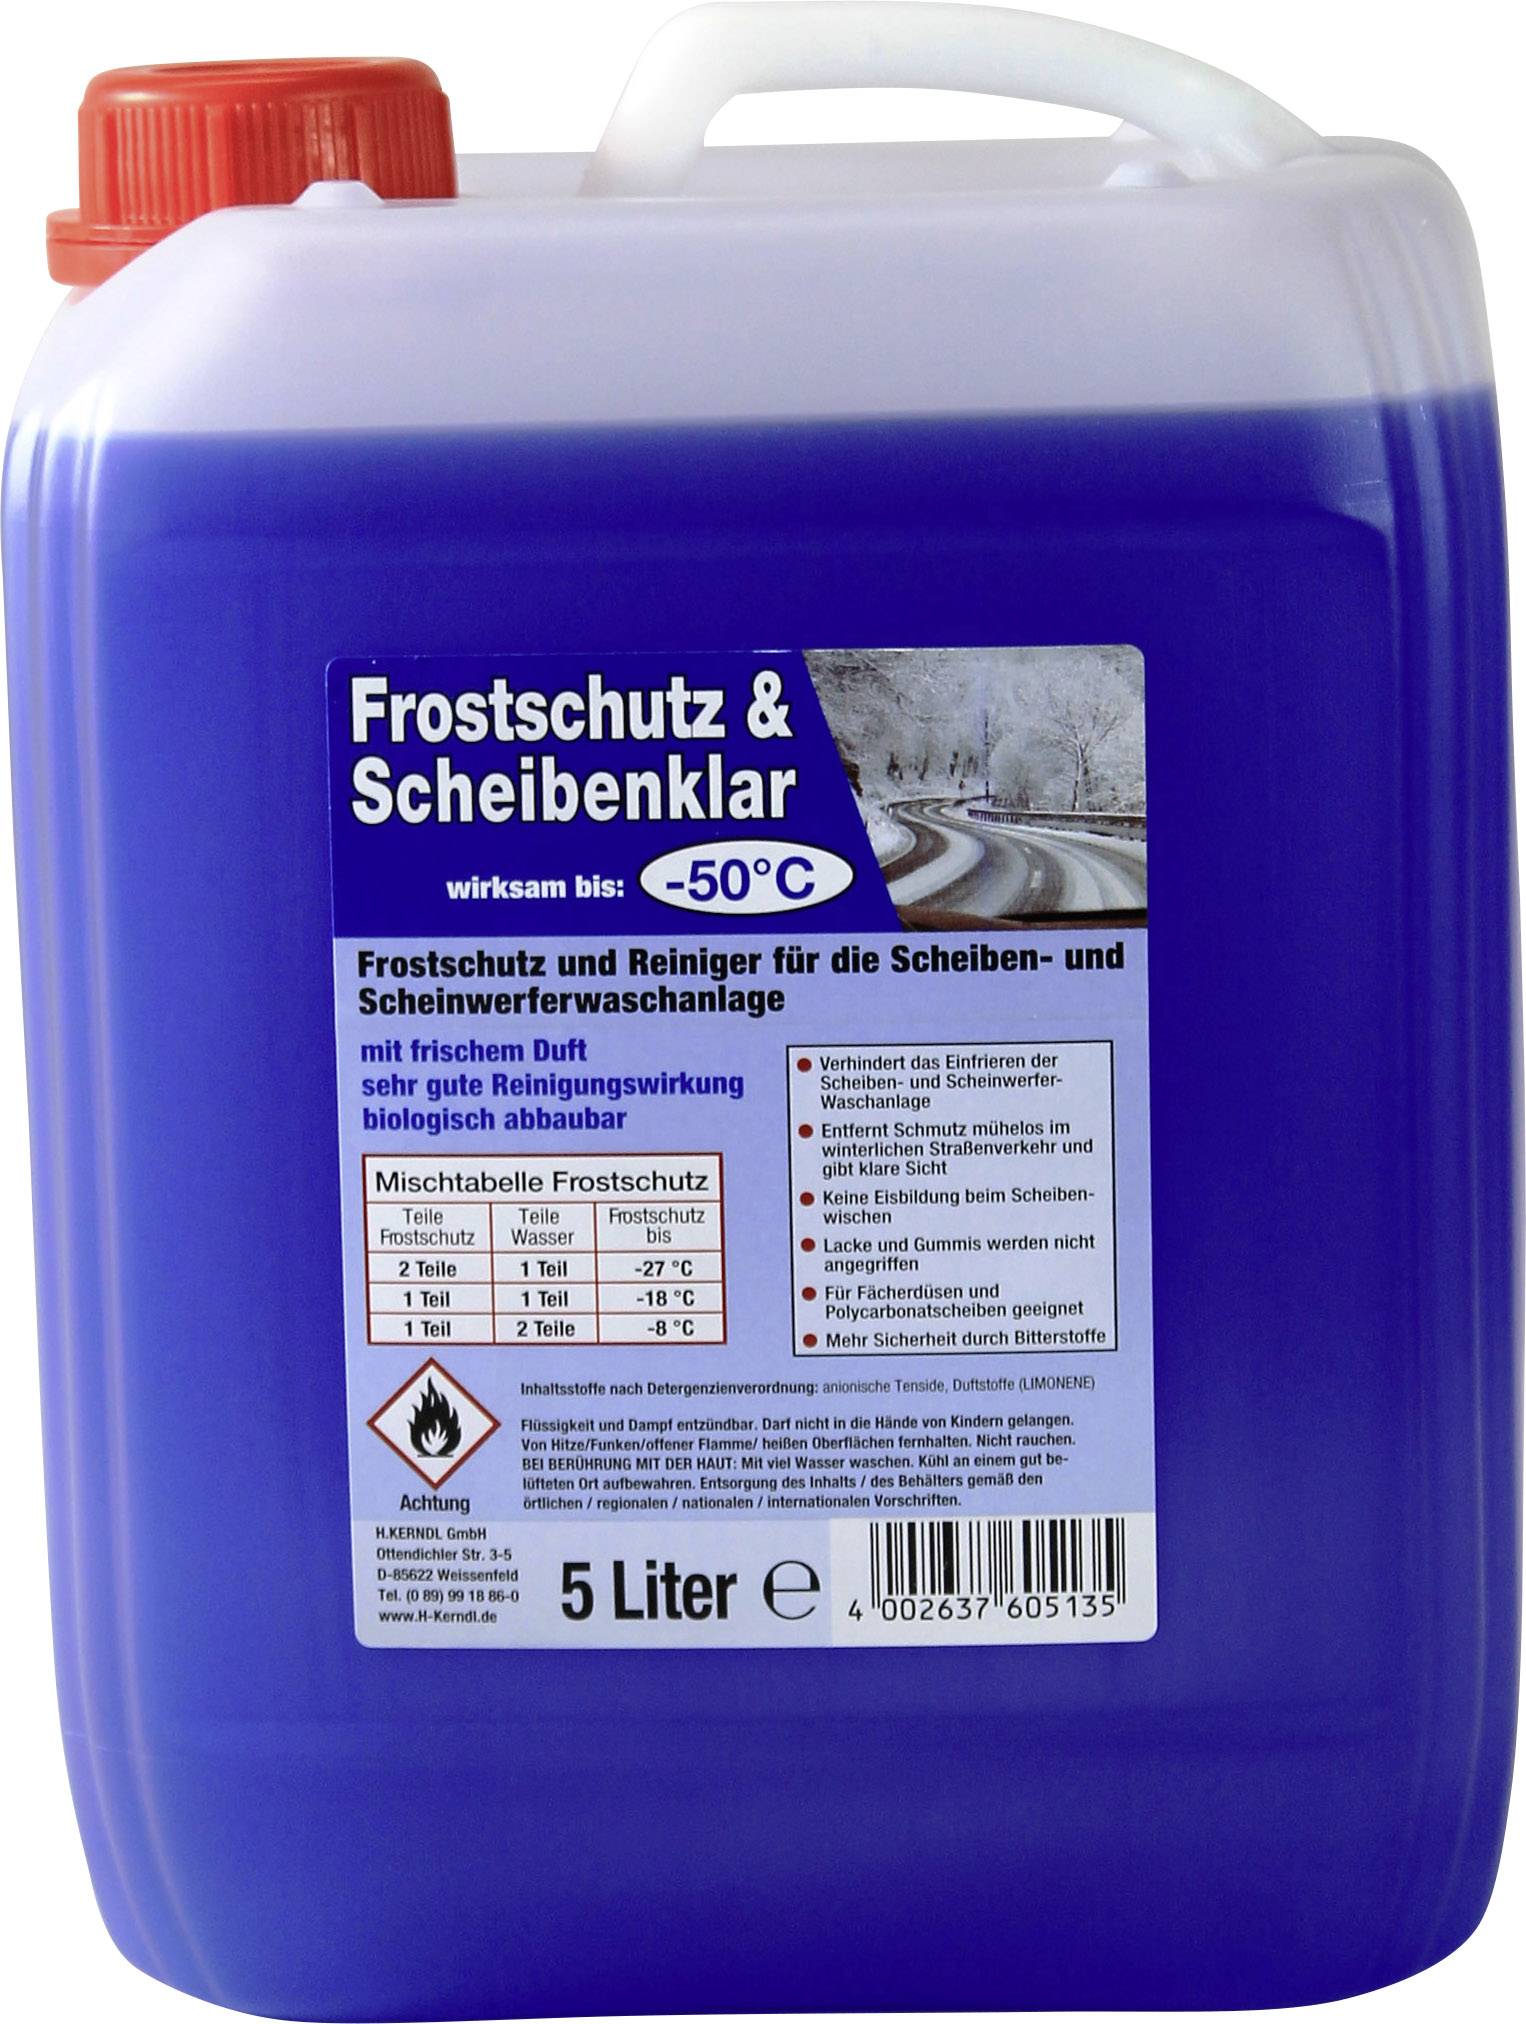 Kerndl 60505 Scheiben-Frostschutz Scheibenwaschanlage 5 l -50 °C kaufen